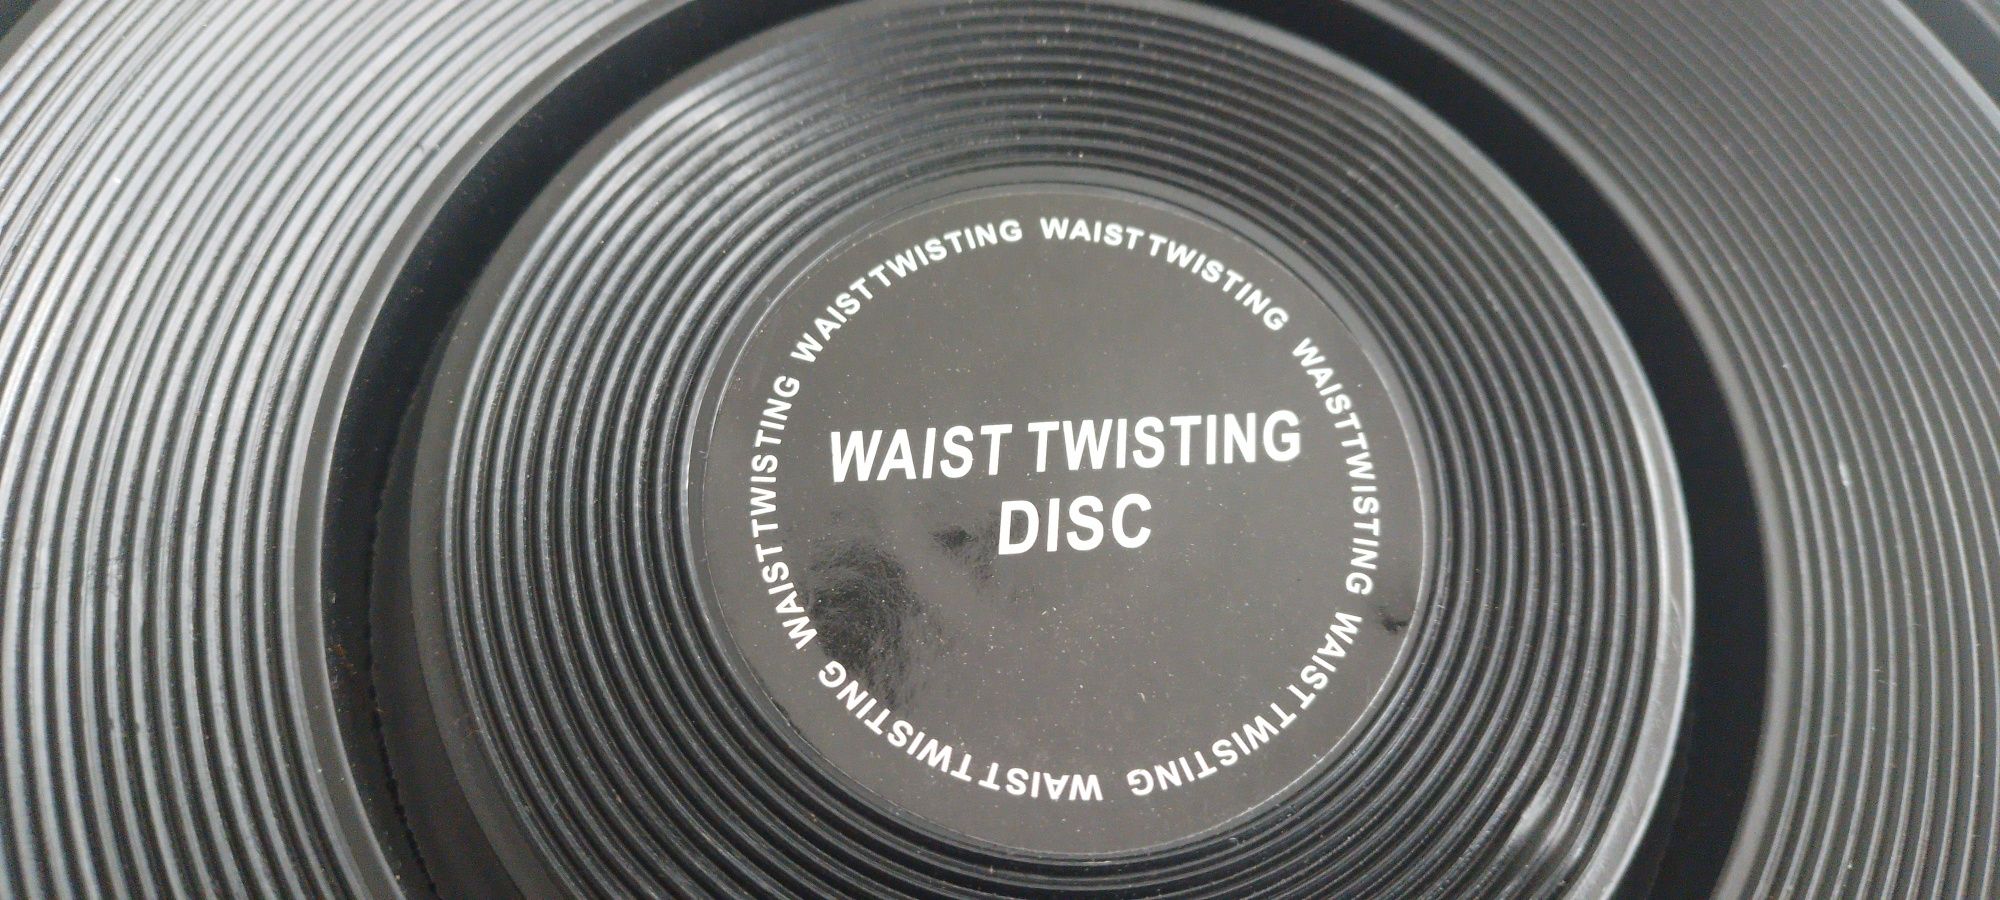 Waist twisting disco